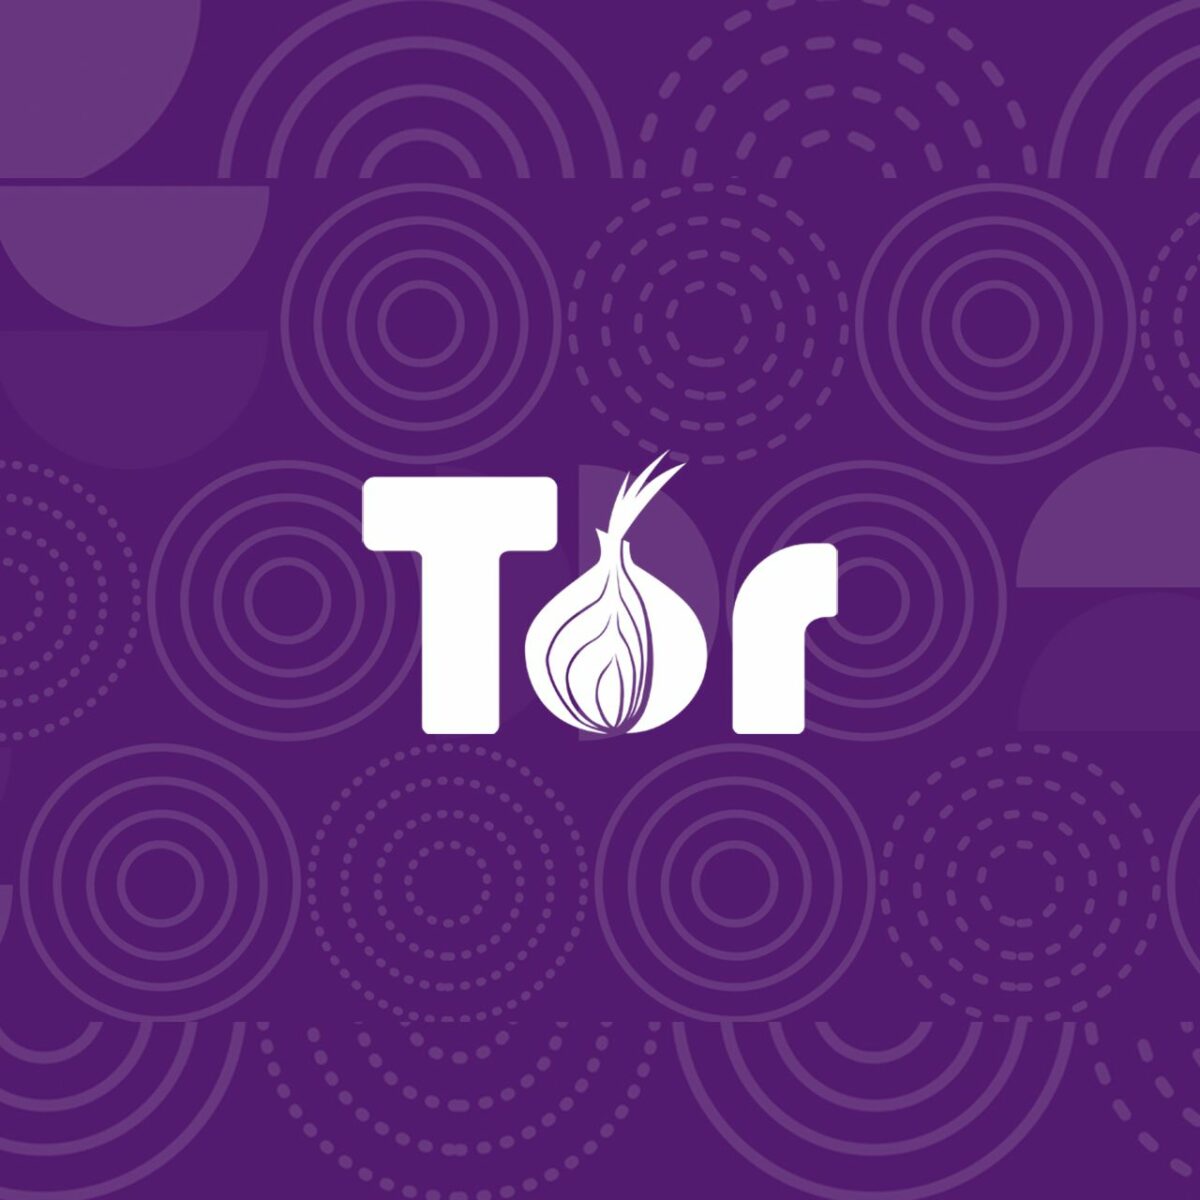 Tor browser виндовс 10 гидра мосты для тор браузера для гидры